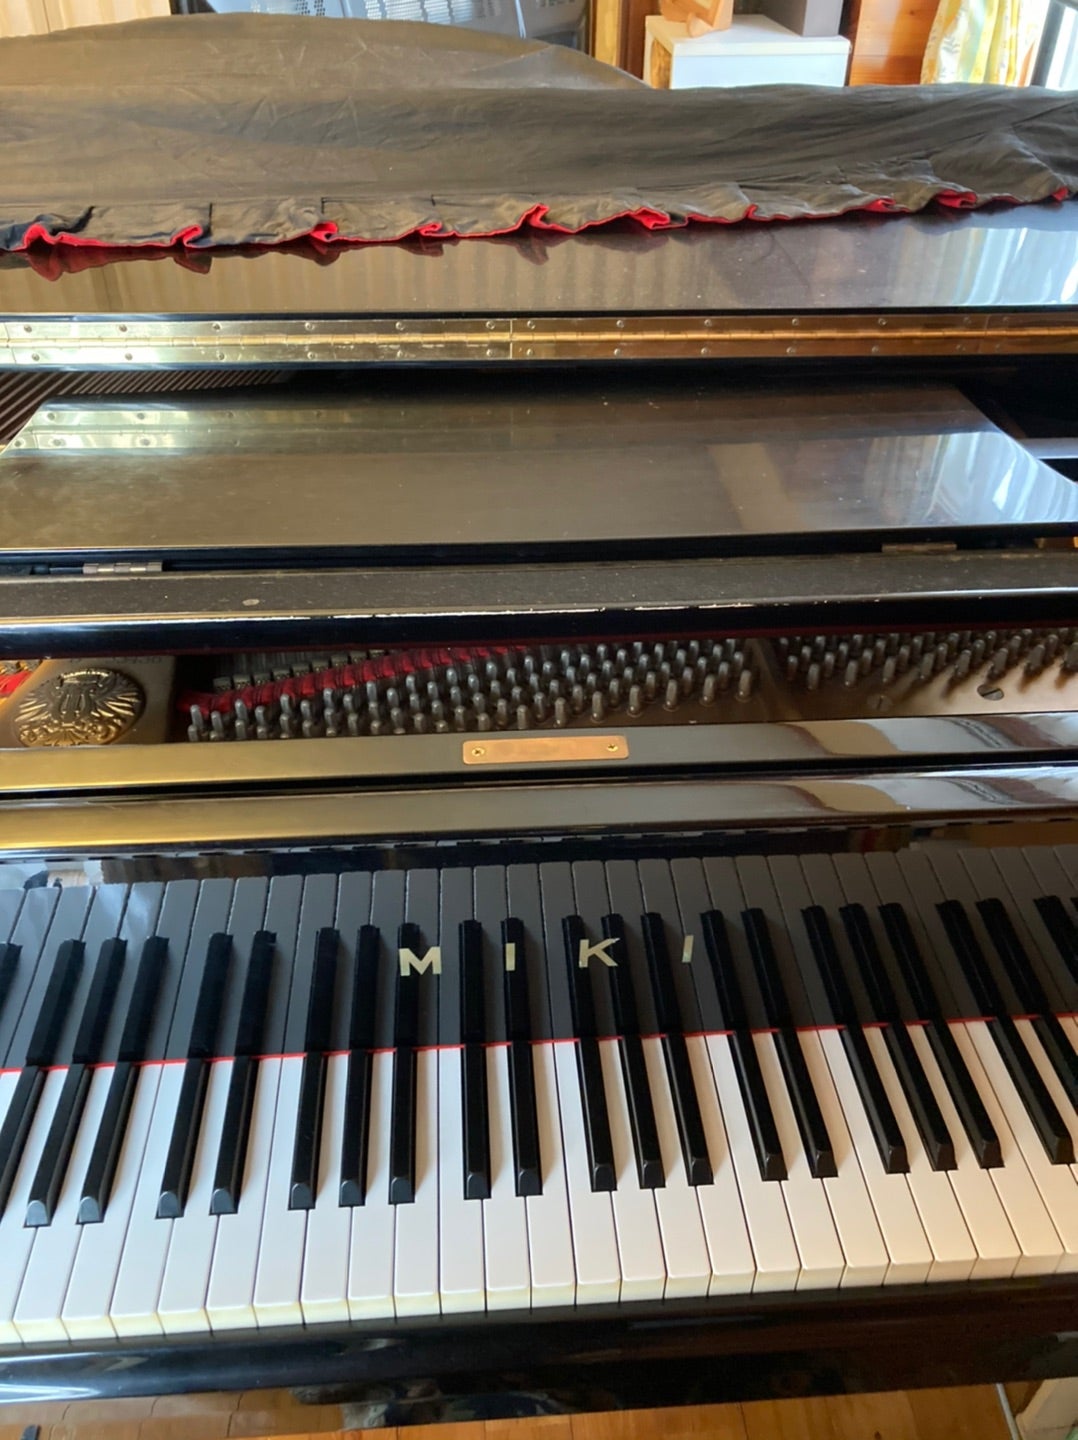 MIKIグランドピアノが2台 | Klavier craft のらりくらりブログ